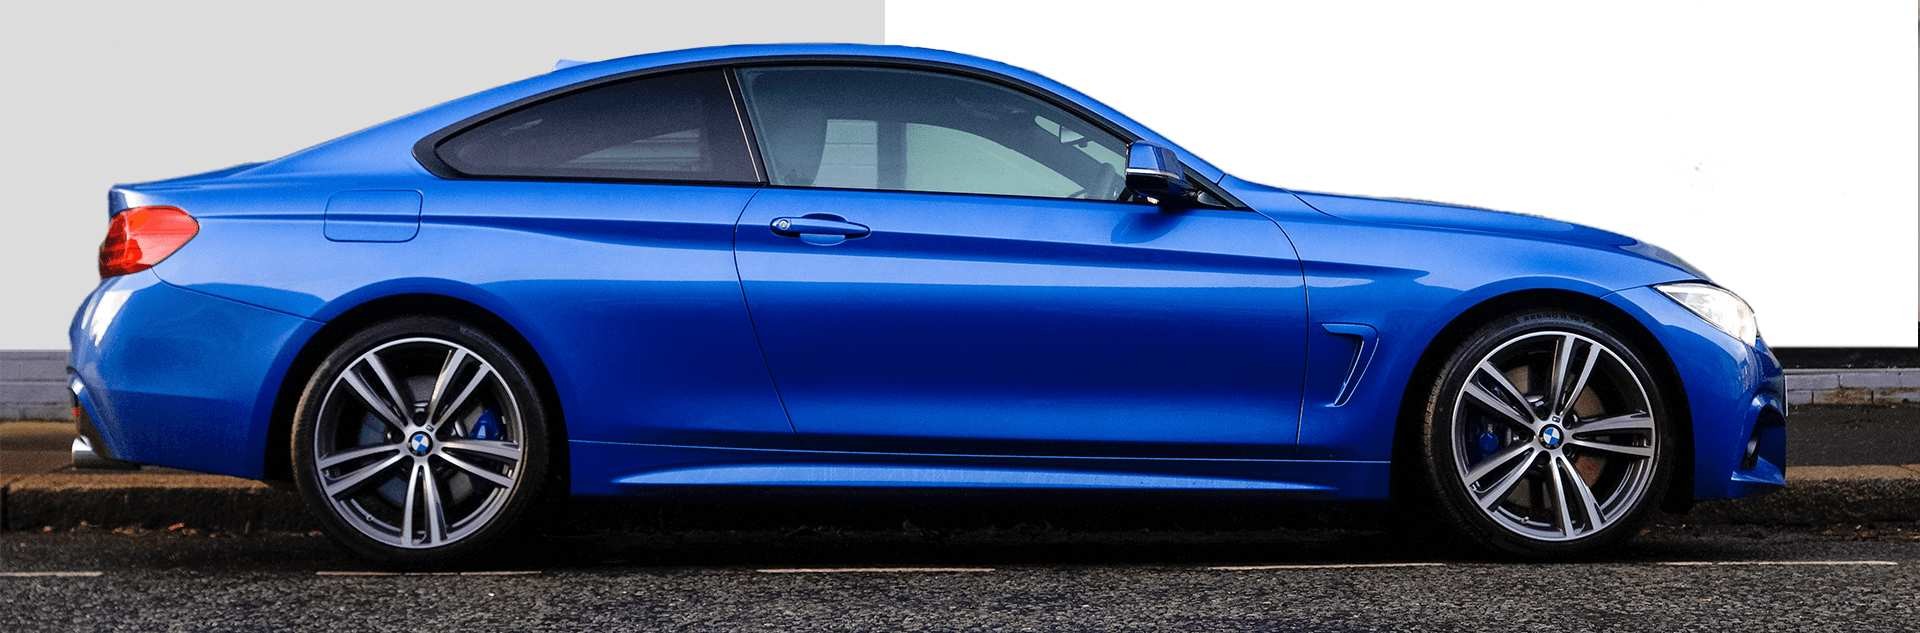 Coupe BMW w kolorze blue imperial